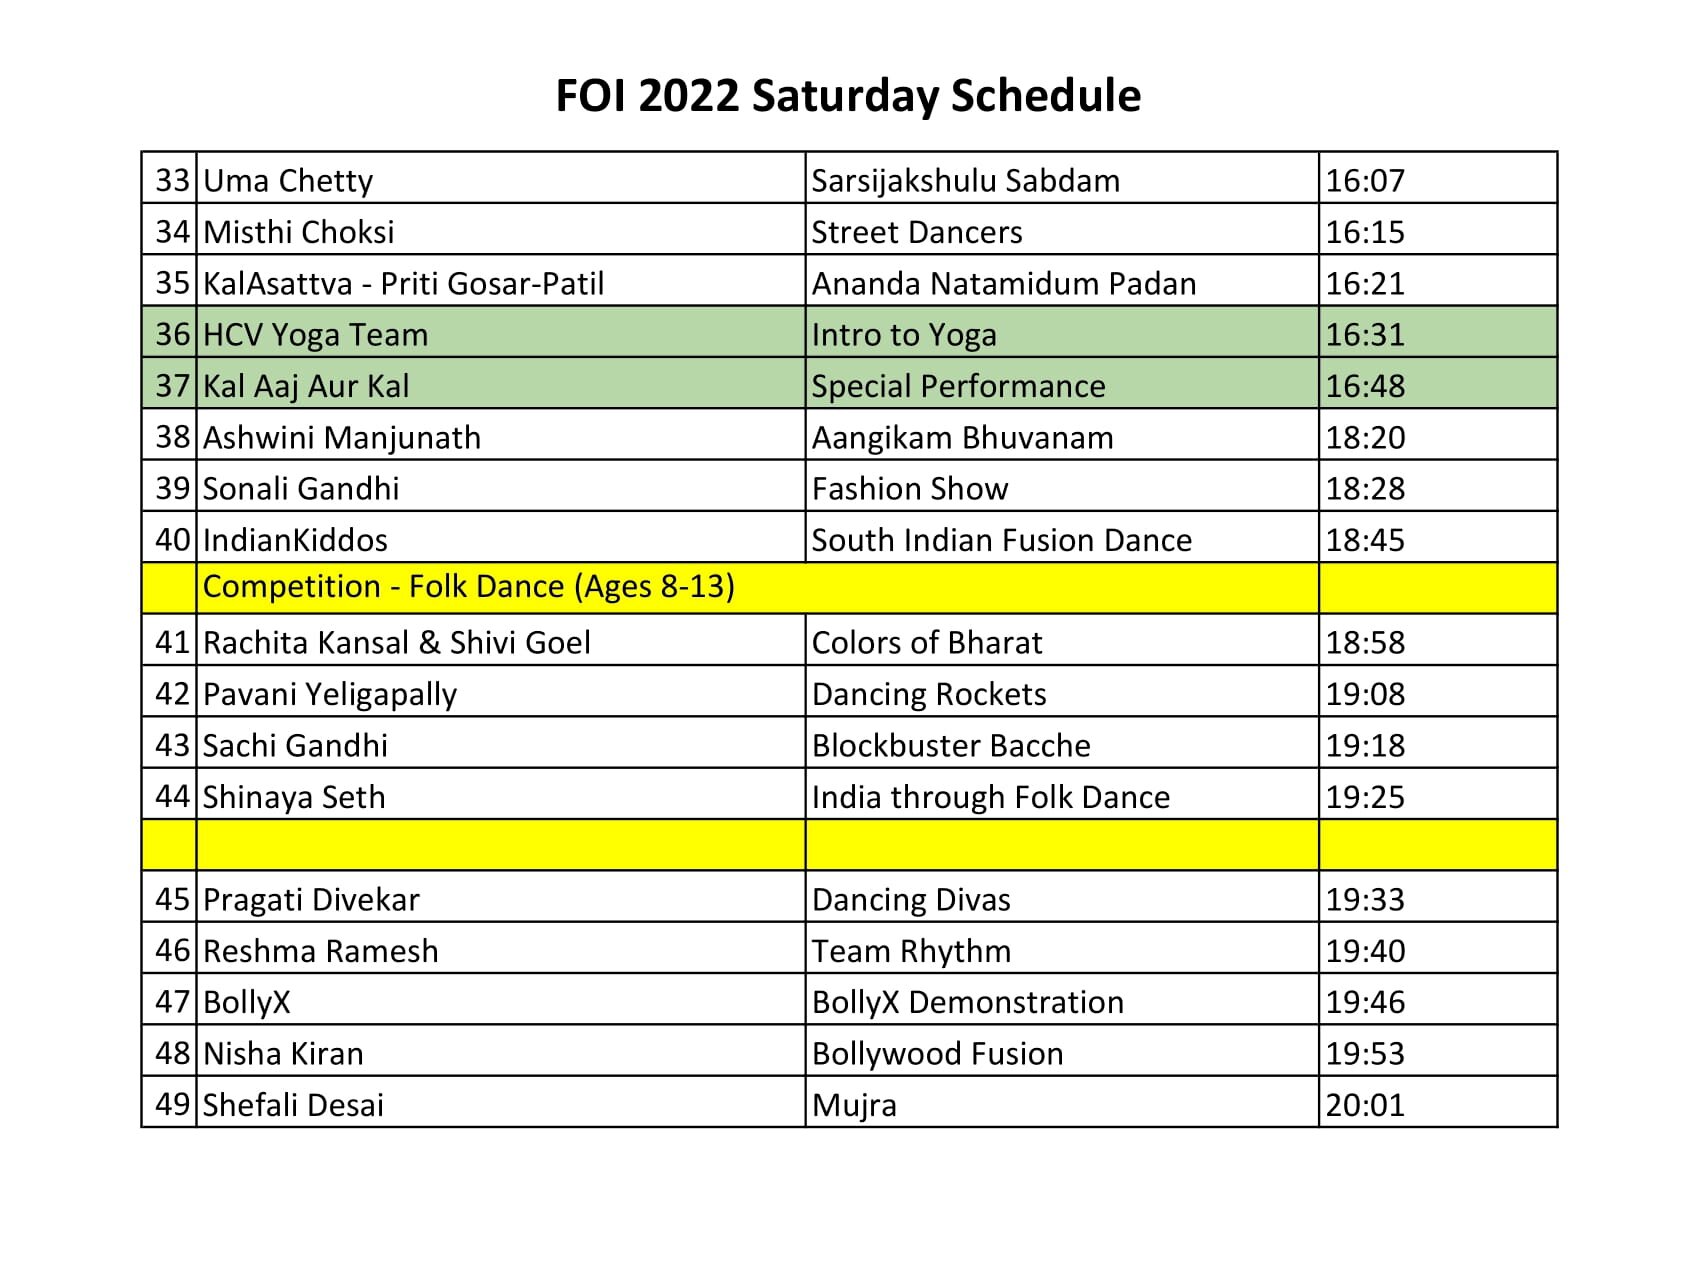 FOI 2022 Saturday Schedule-2